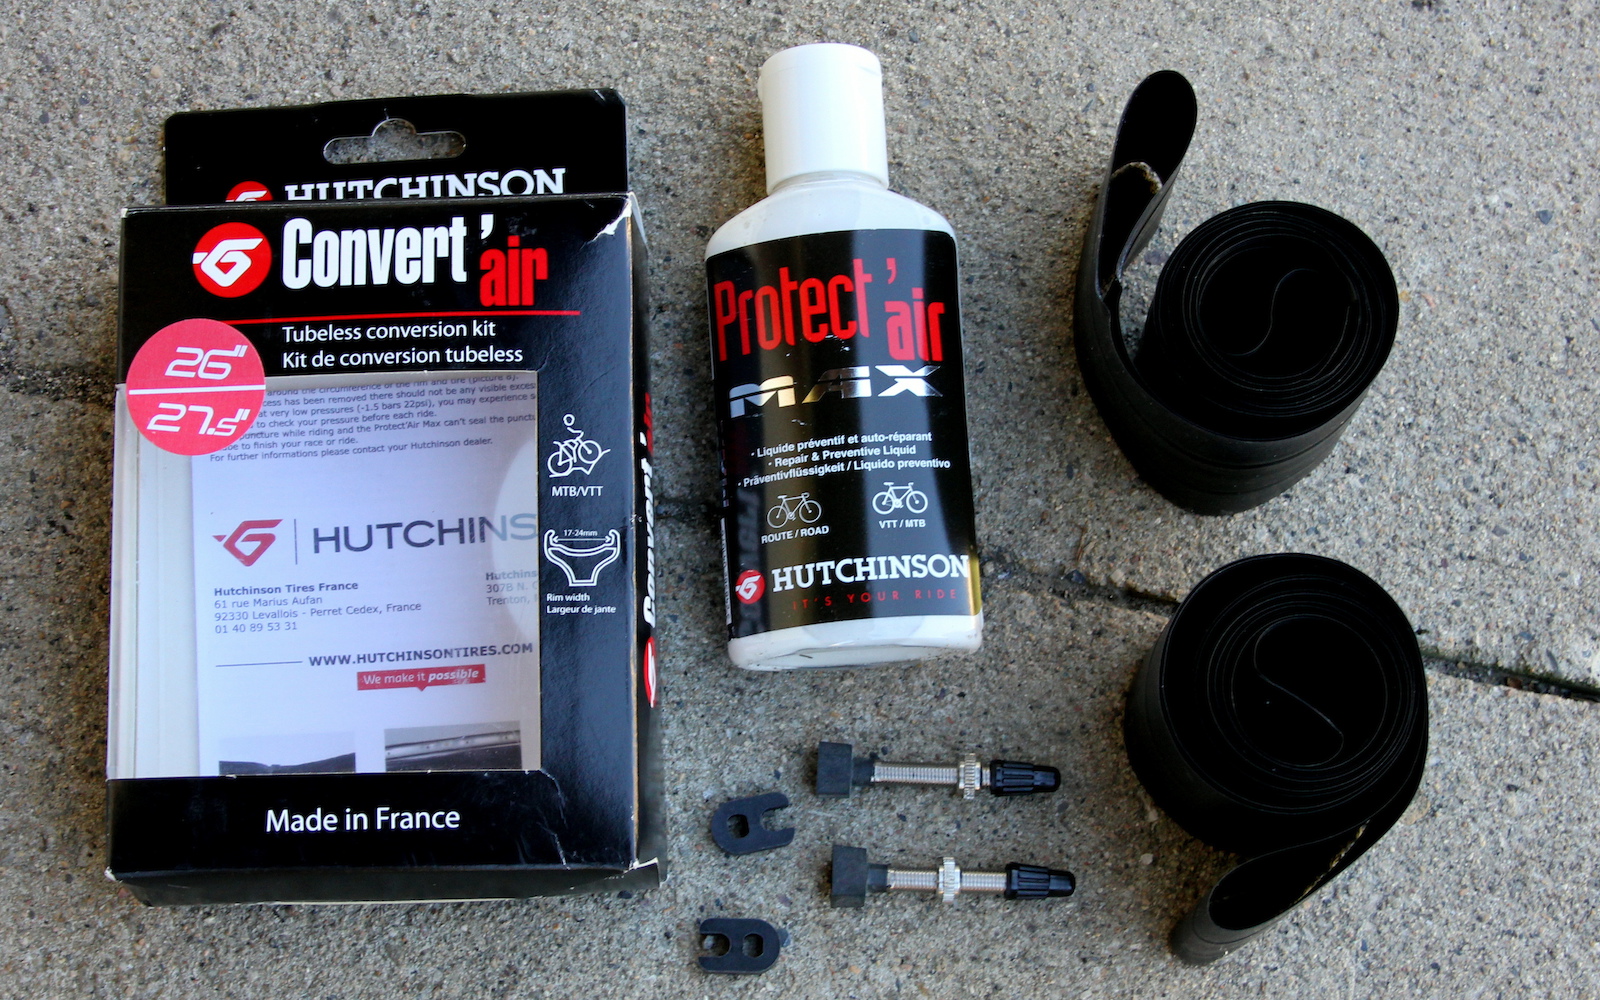 Hutchinson Convert'air tubeless kit